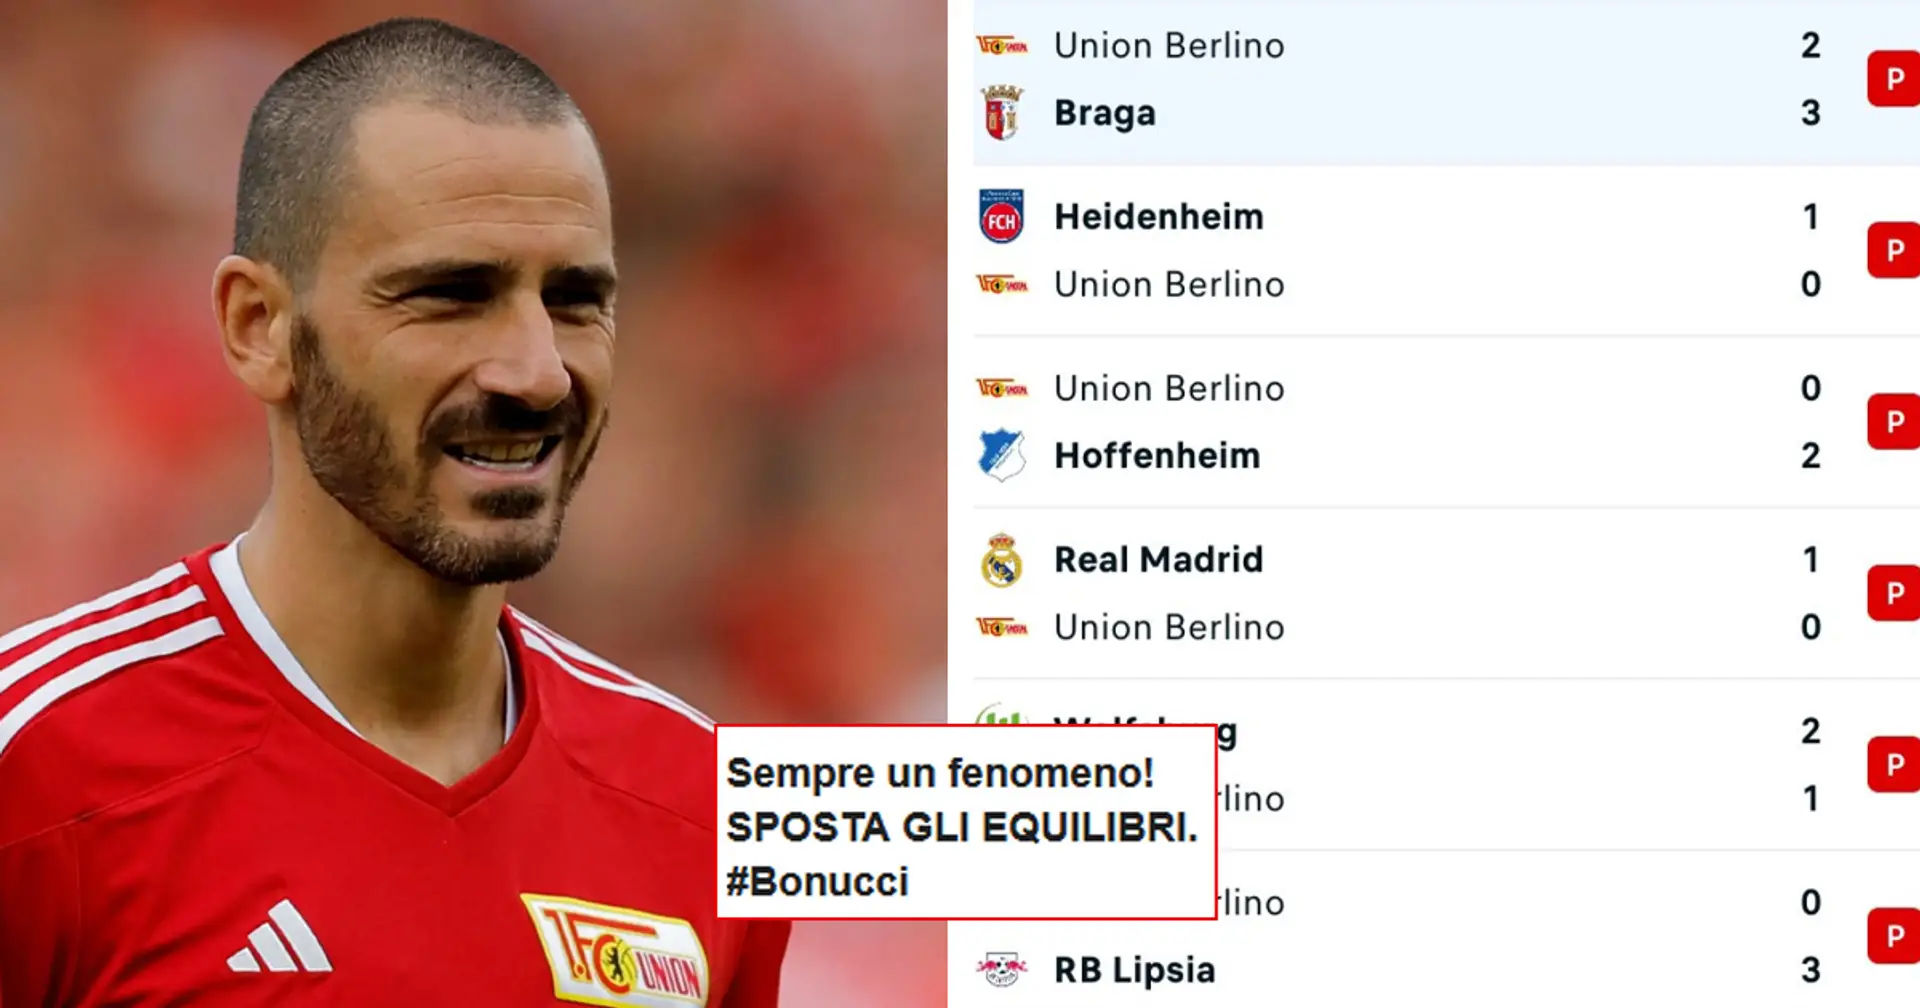 "Sposti sempre gli equilibri!": 6 ko su 6 gare per l'Union Berlino con Bonucci, scoppia l'ironia dei tifosi del Milan